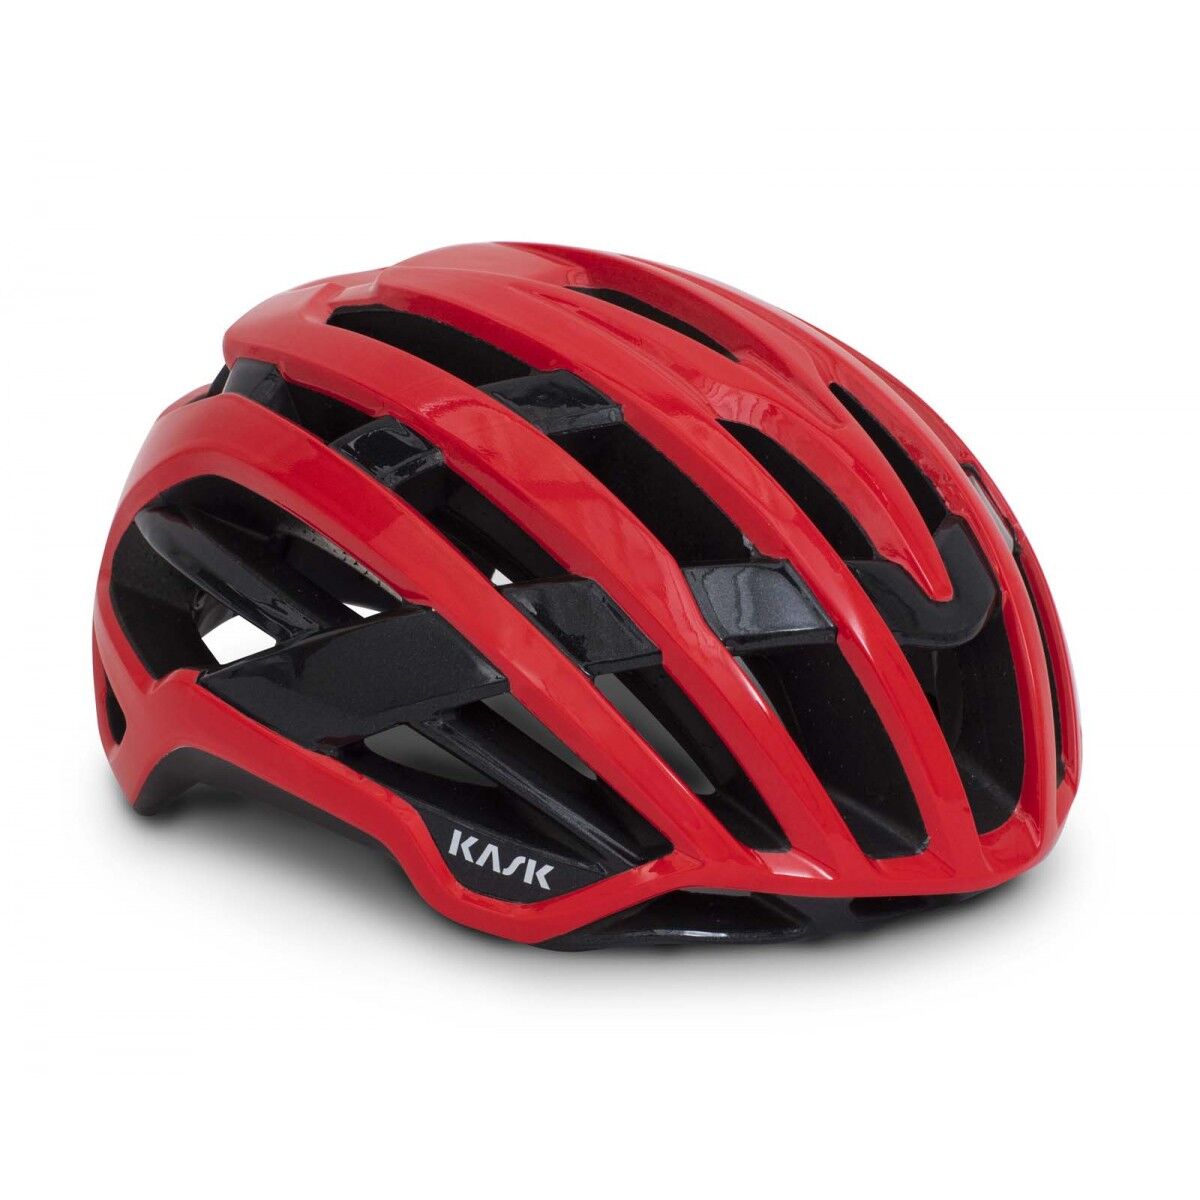 KASK Valegro WG11 - Road bike helmet